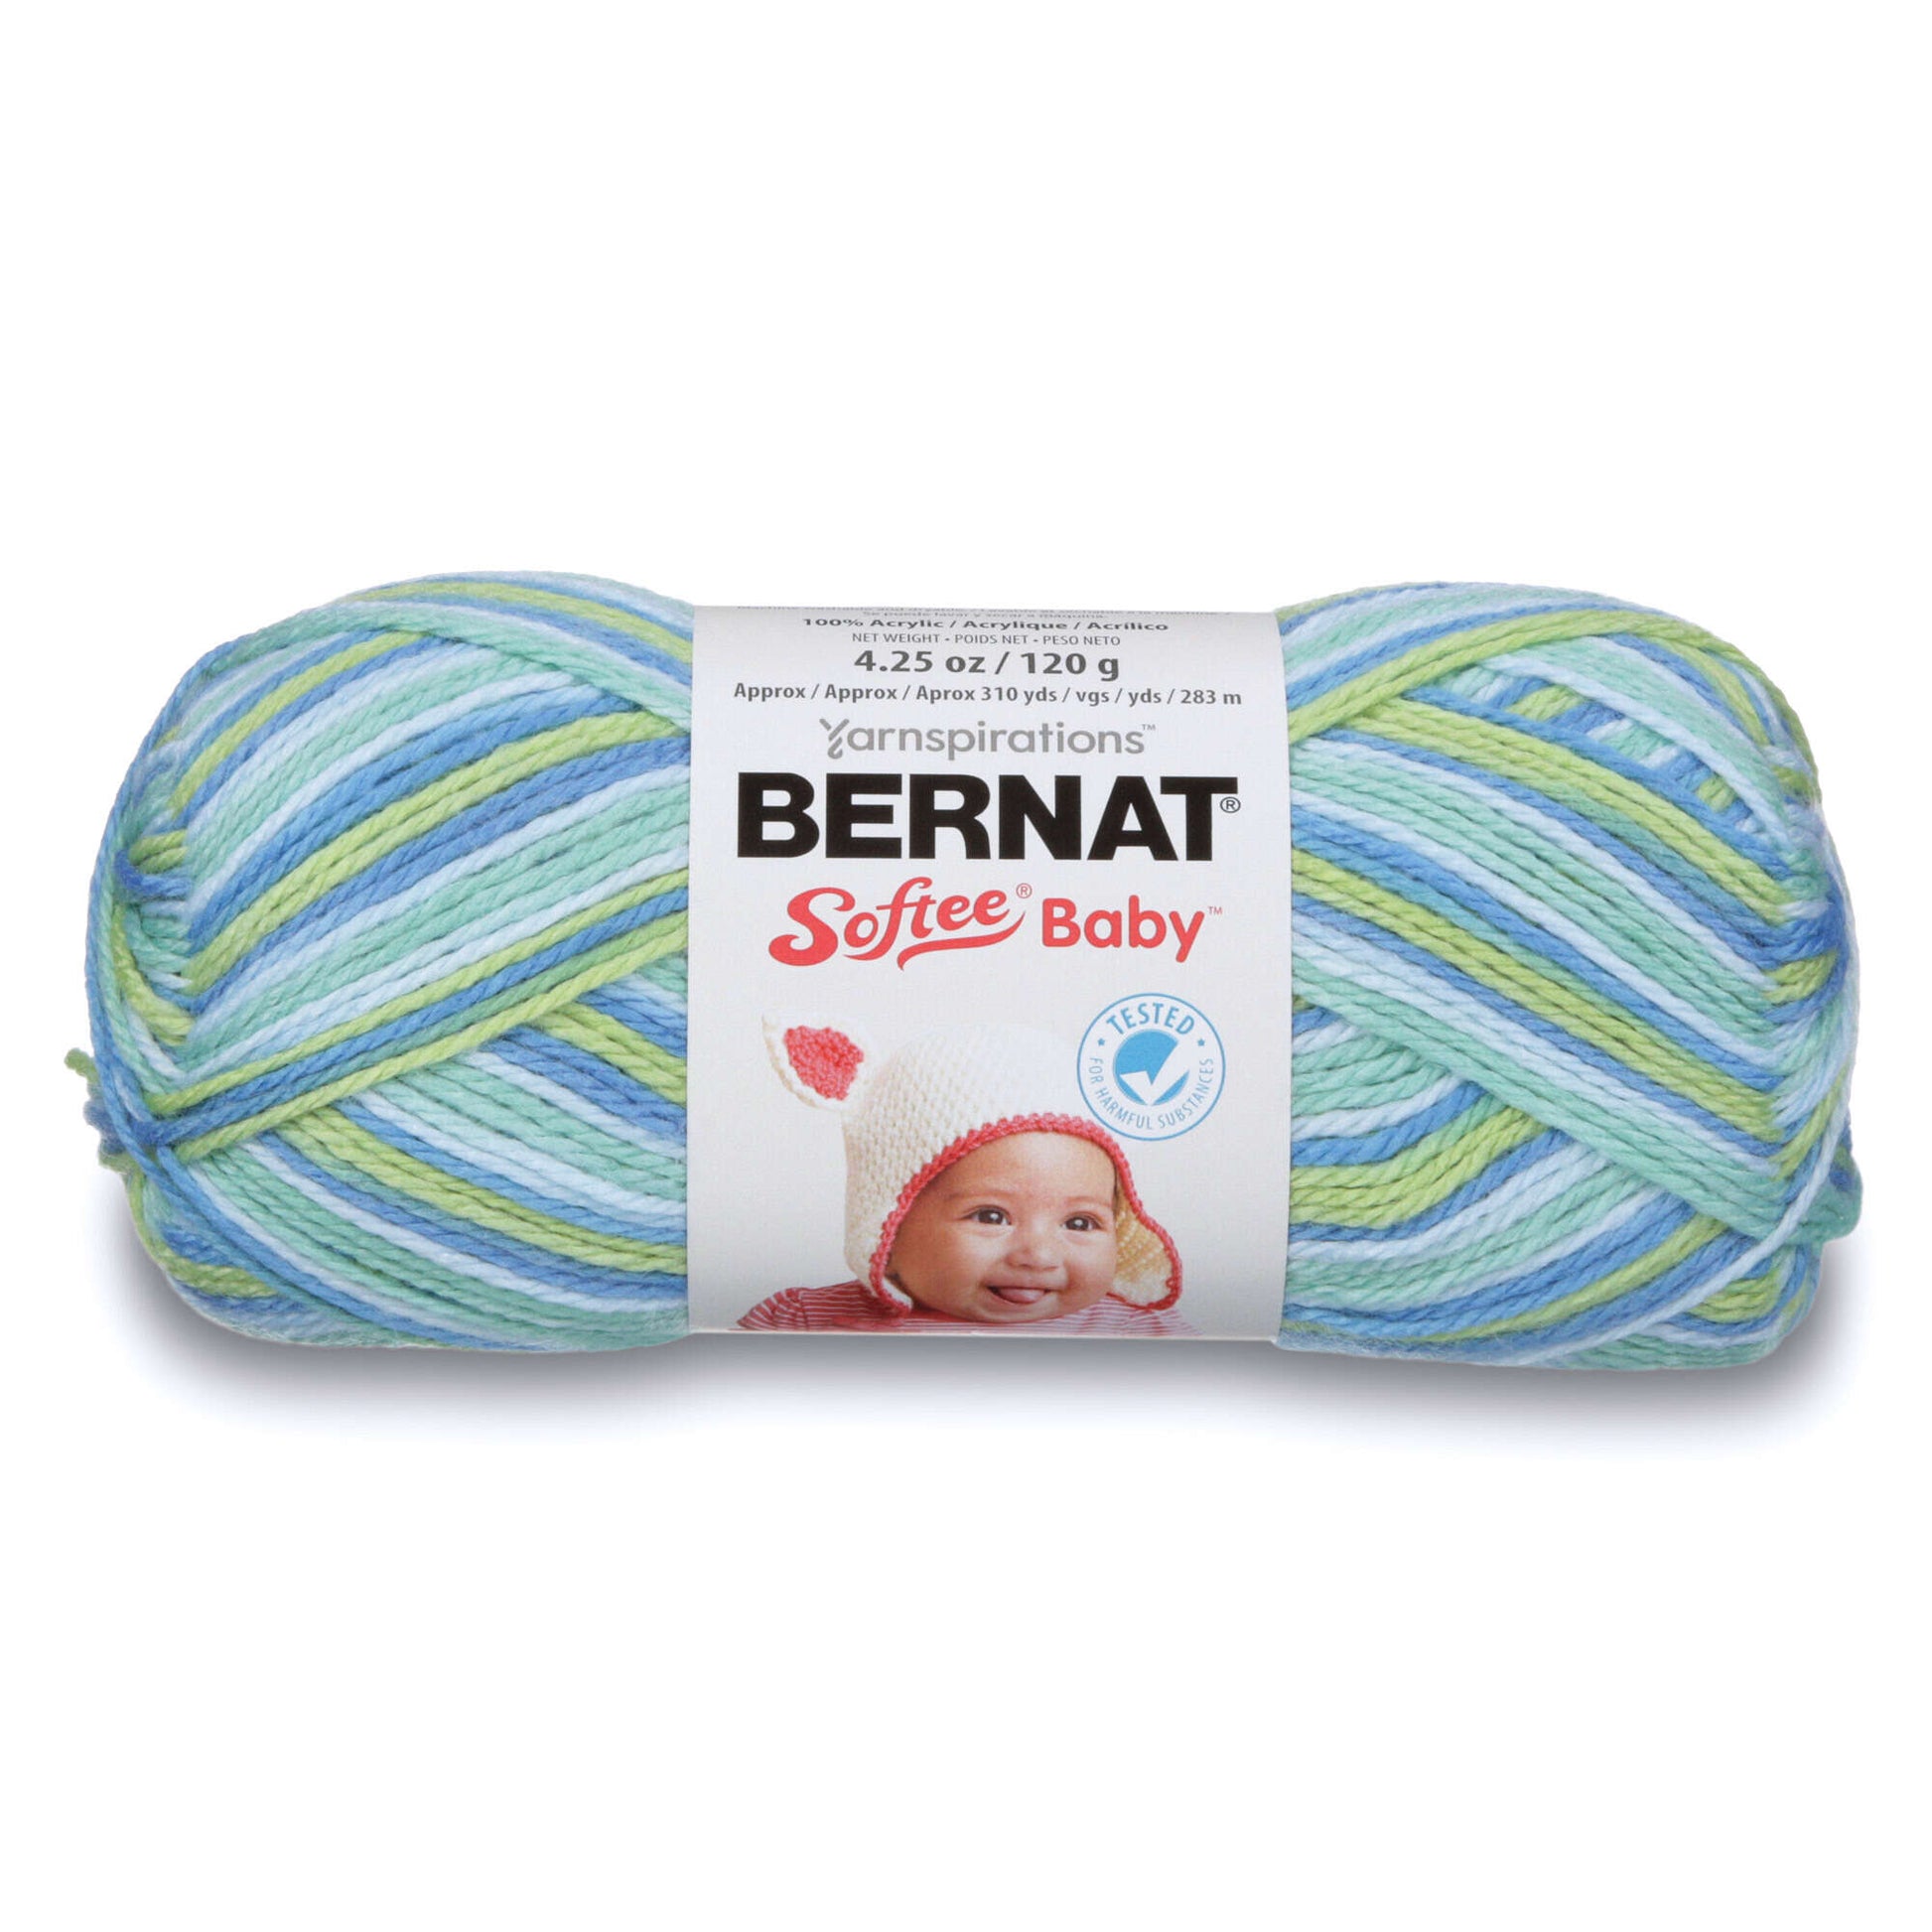 Bernat Softee Baby Variegates Yarn - Discontinued Shades